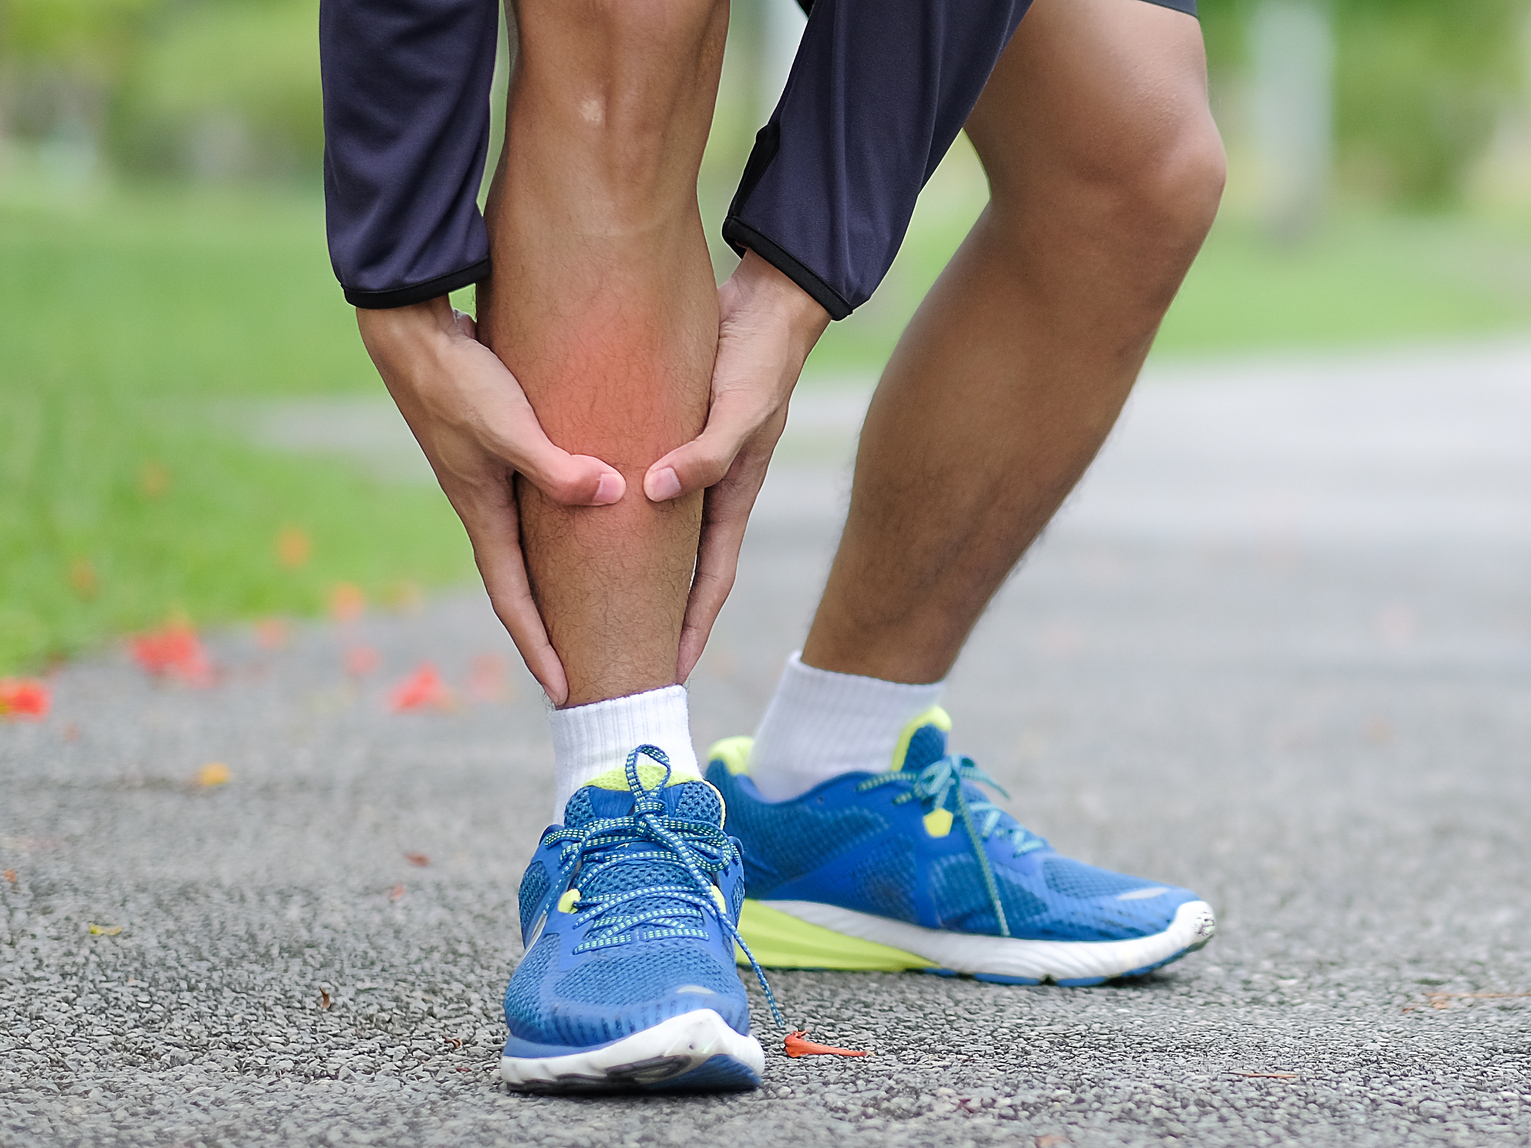 Fáj a lába járás közben? Lehet, hogy perifériás artériás betegség okozza